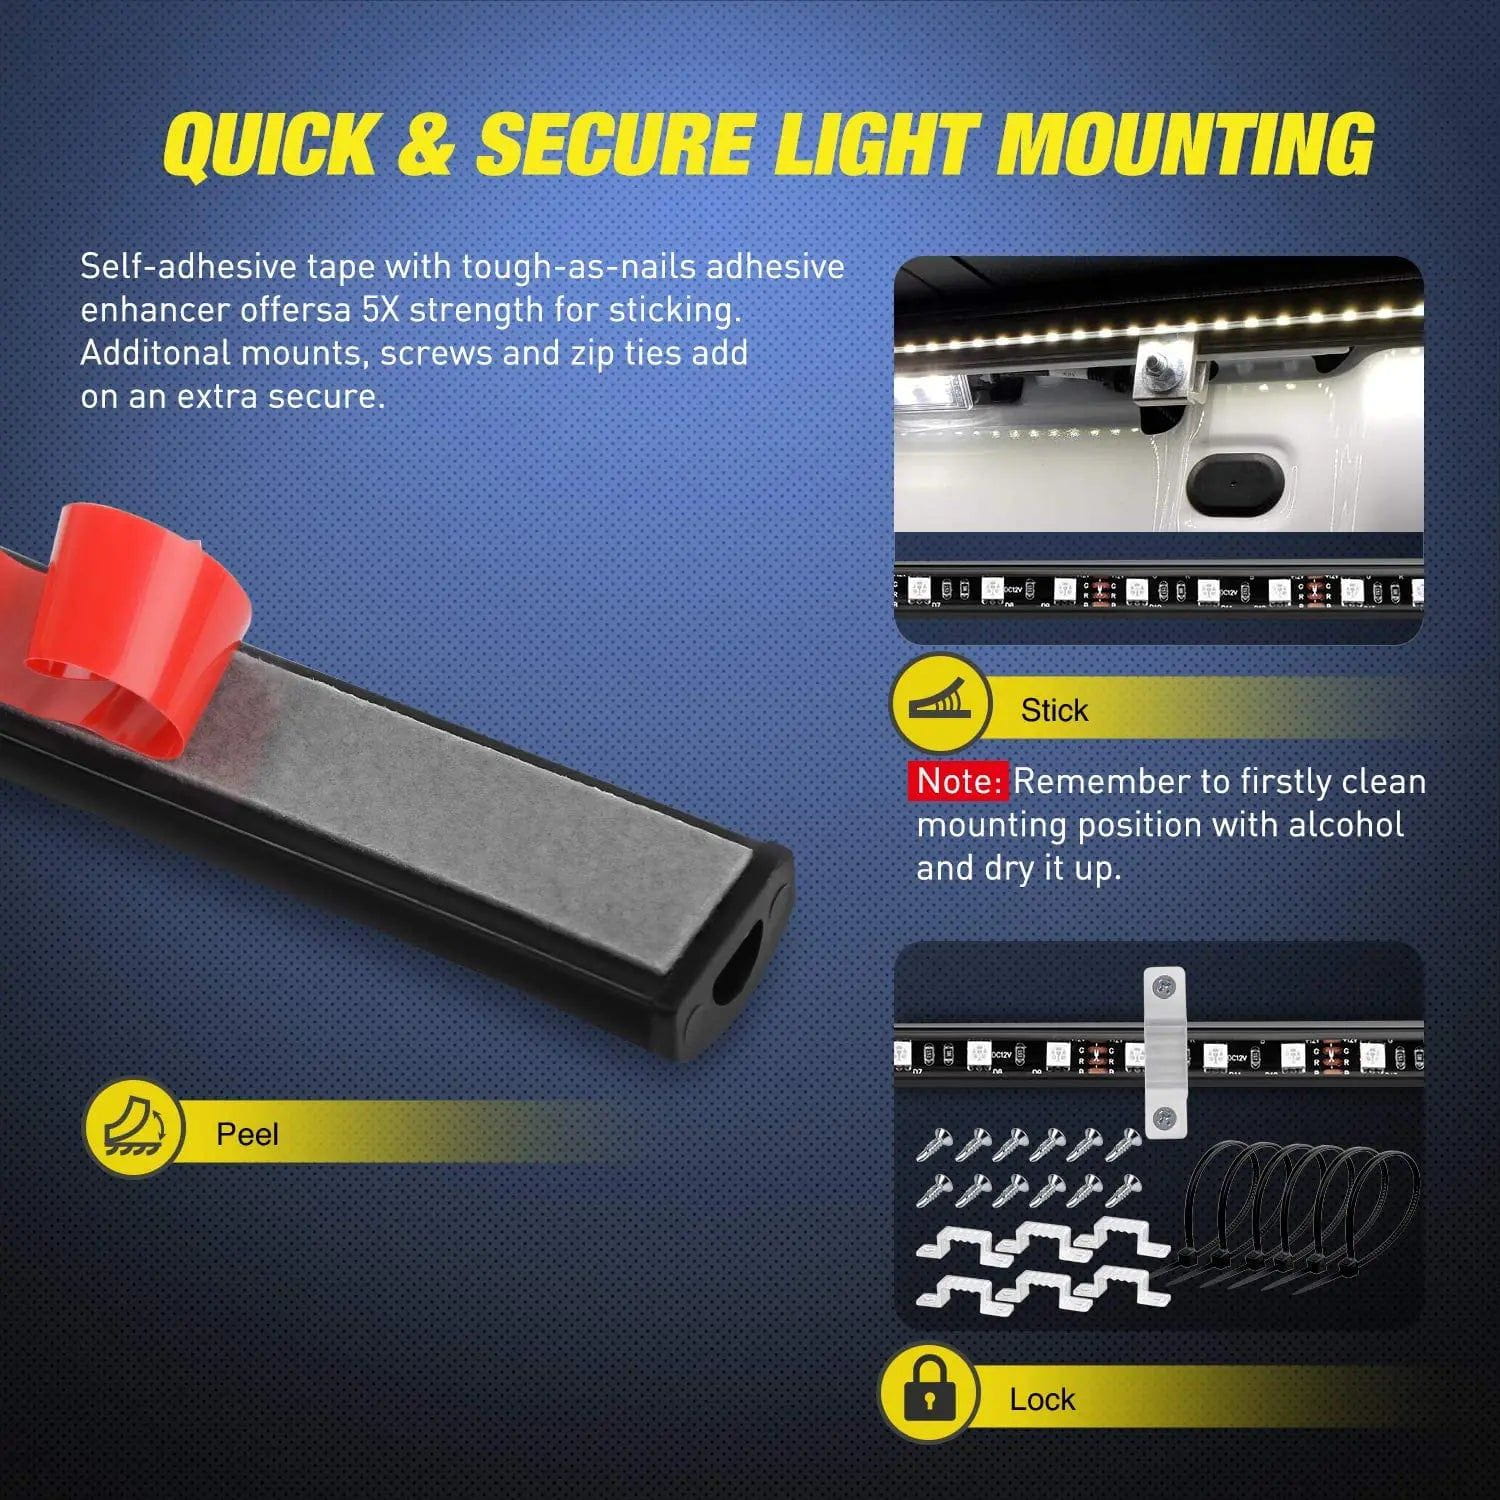 Led light Strip 60” 180Leds RGB RF Remote Control LED Bed Light Strip 2PCS